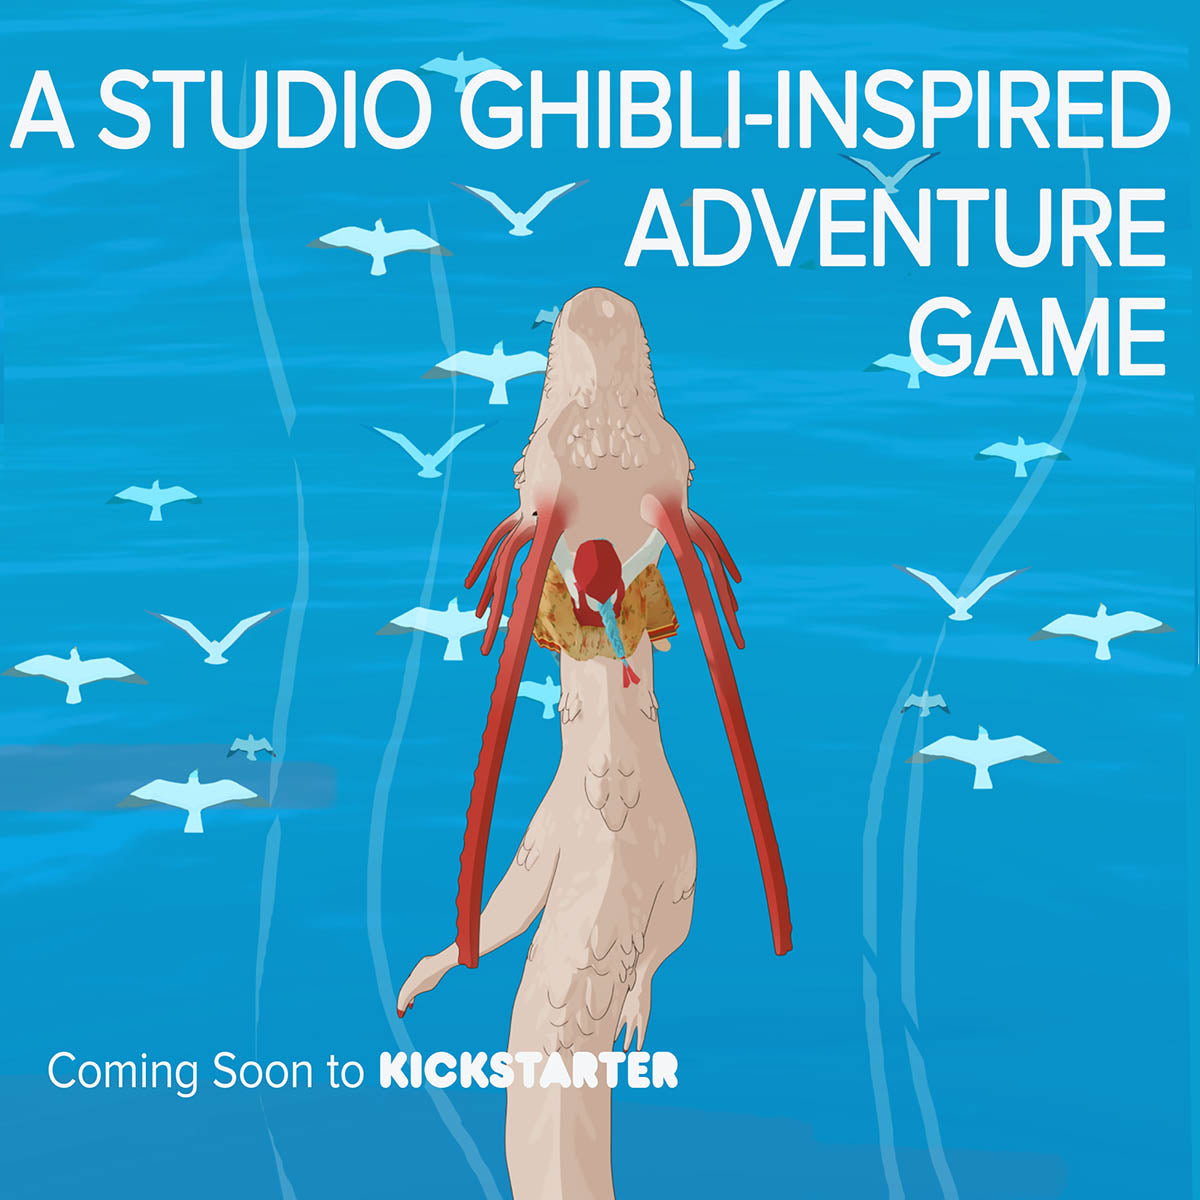 Example of a Facebook Ad Image for a Kickstarter Prelaunch, "Coming Soon to Kickstarter" ad 